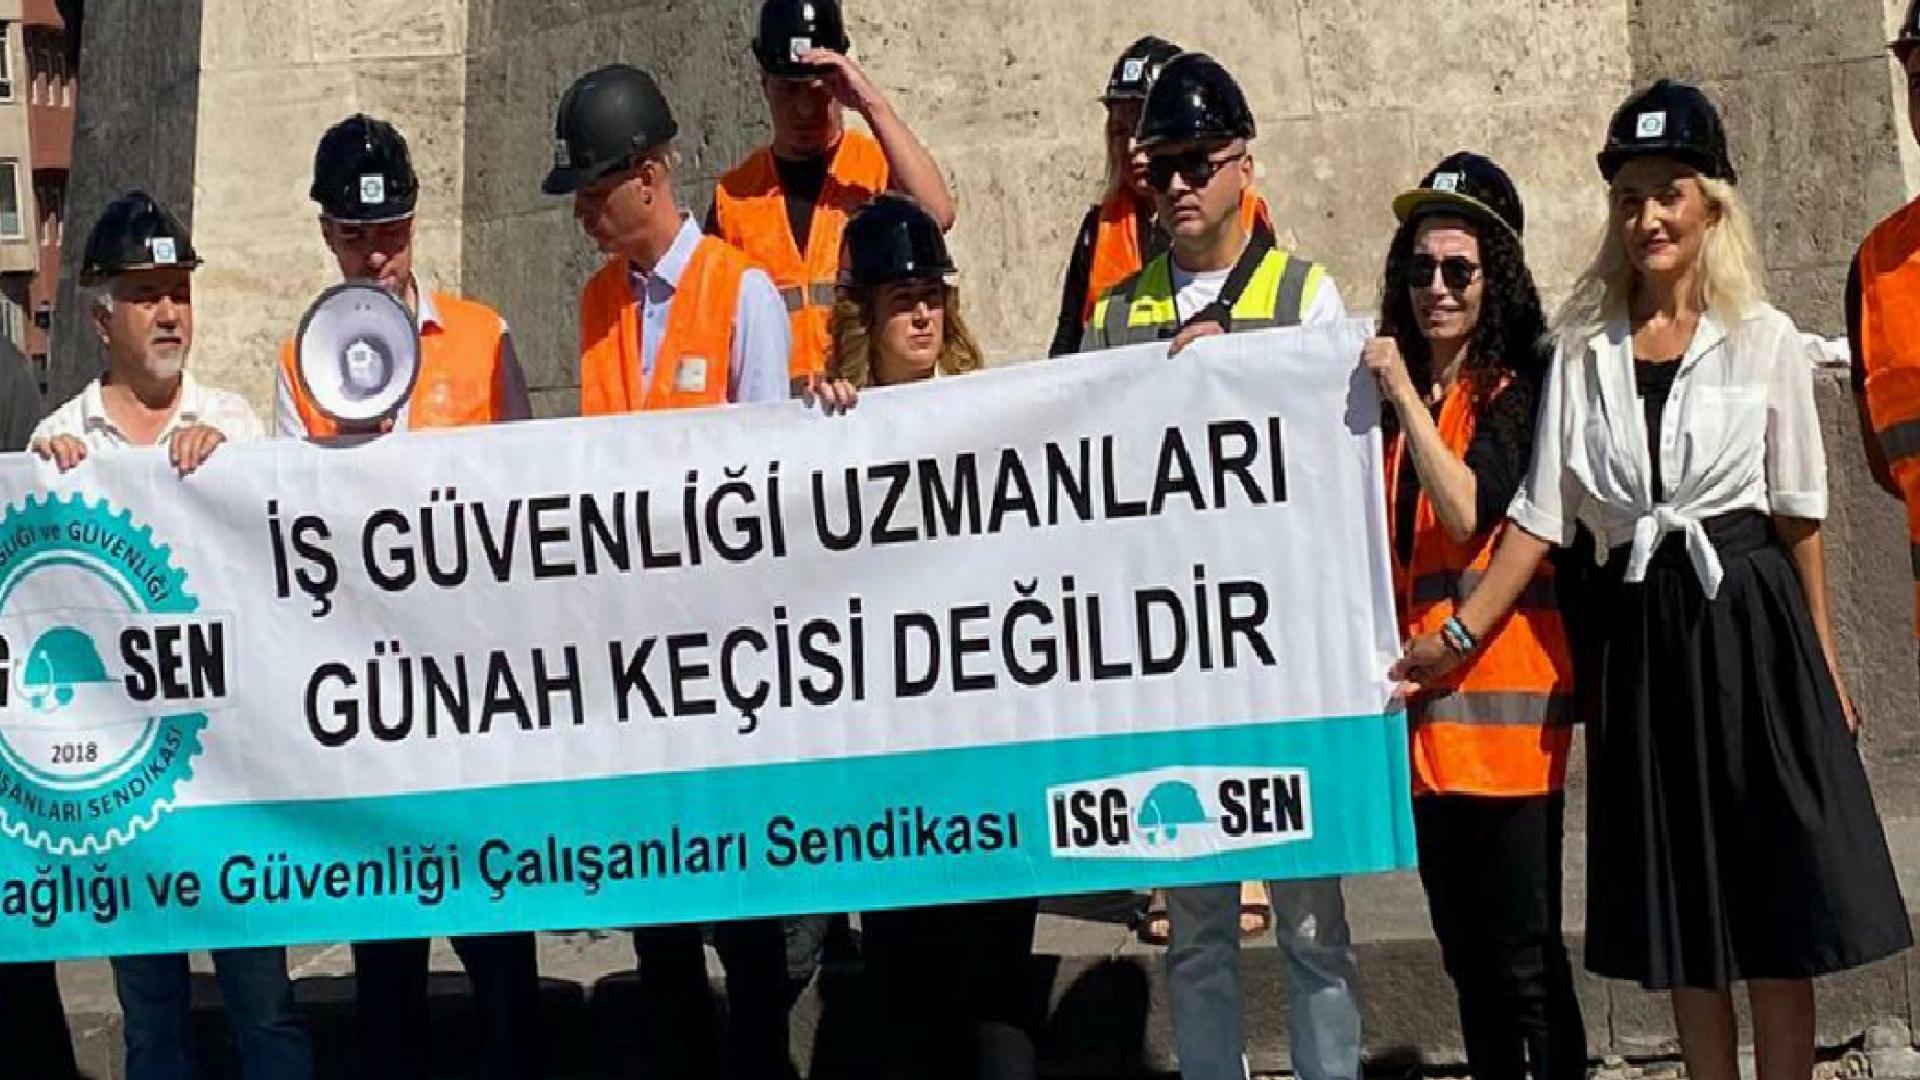 İş güvenliği uzmanları Ankara’da eylem yaptı: İş kazalarının sebebi daha çok kazanmak isteyen hırslı işverenlerdir